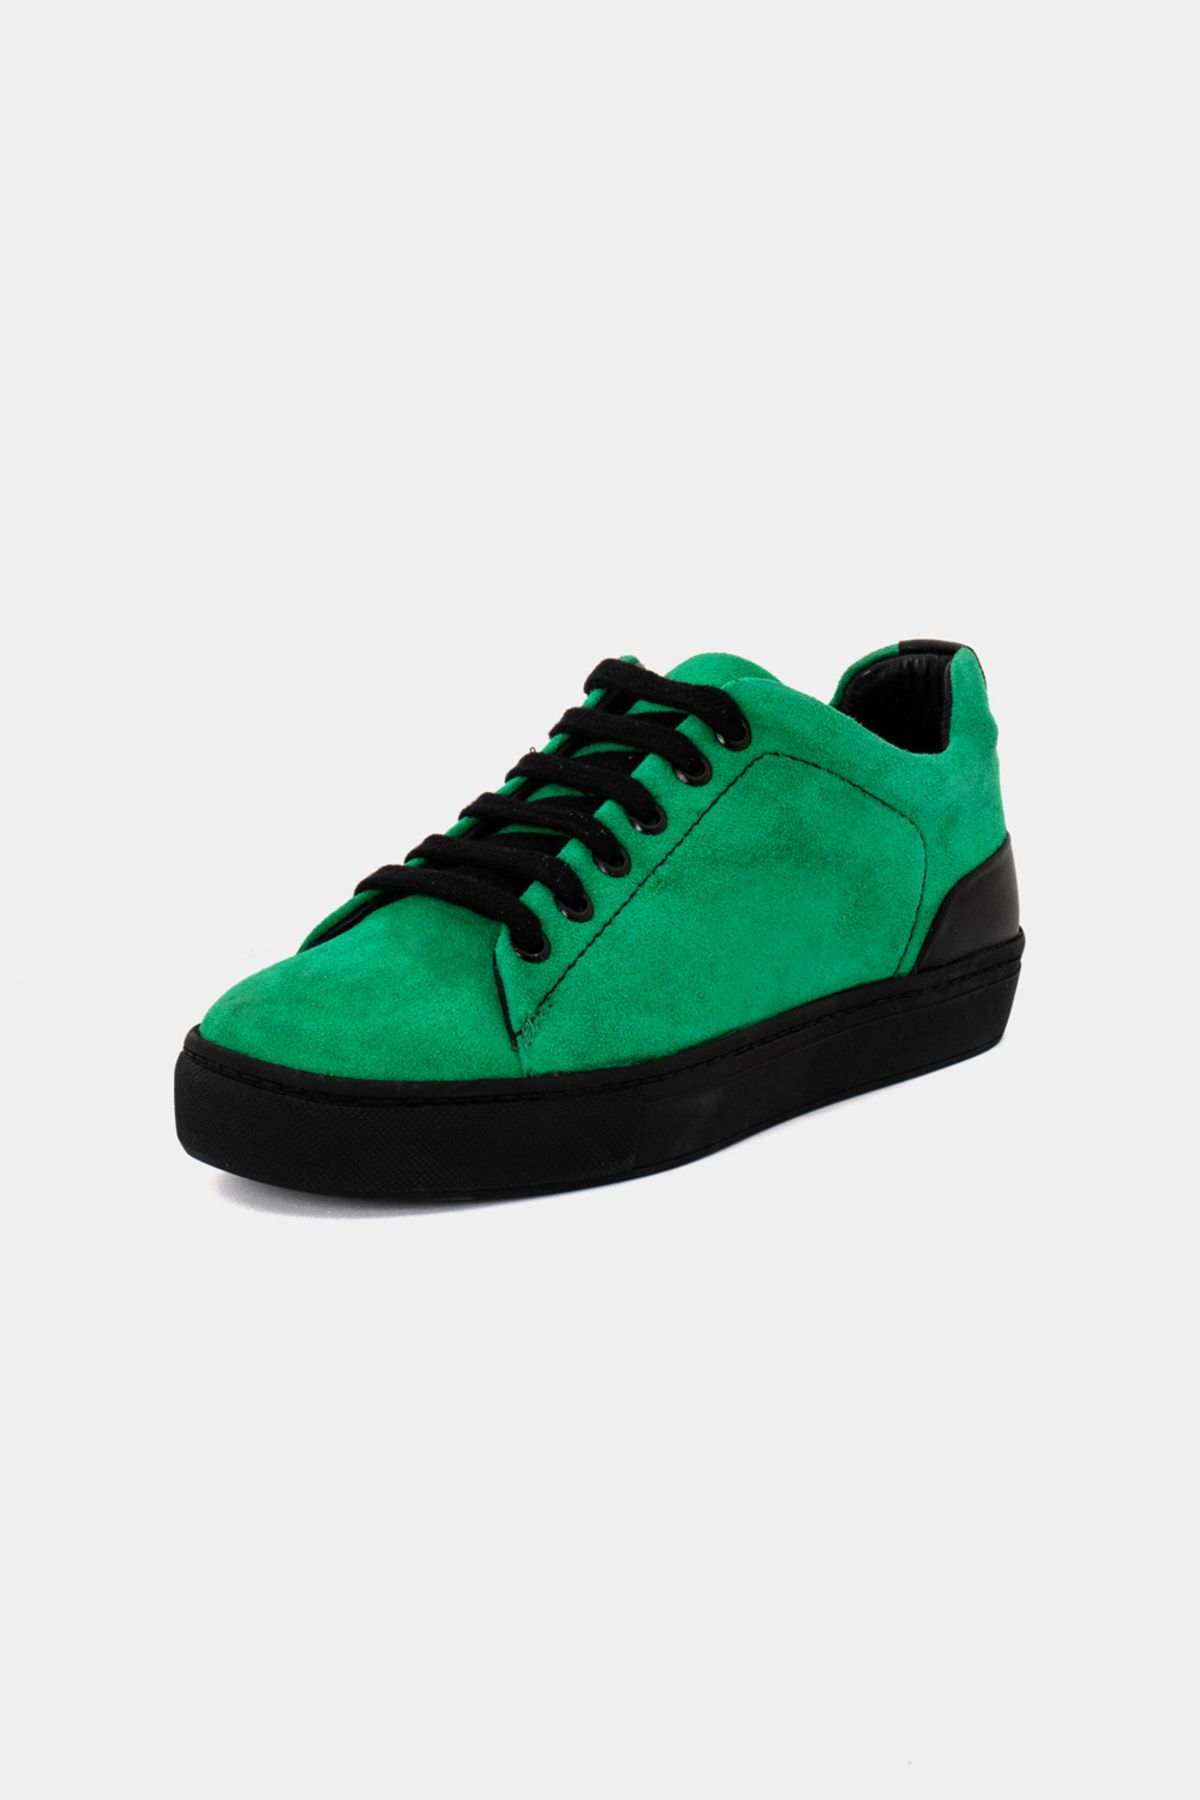 Perspective Düz Tabanlı Önü Bağcıklı Basic Elma Yeşili Renk Kadın Sneaker Ayakkabı